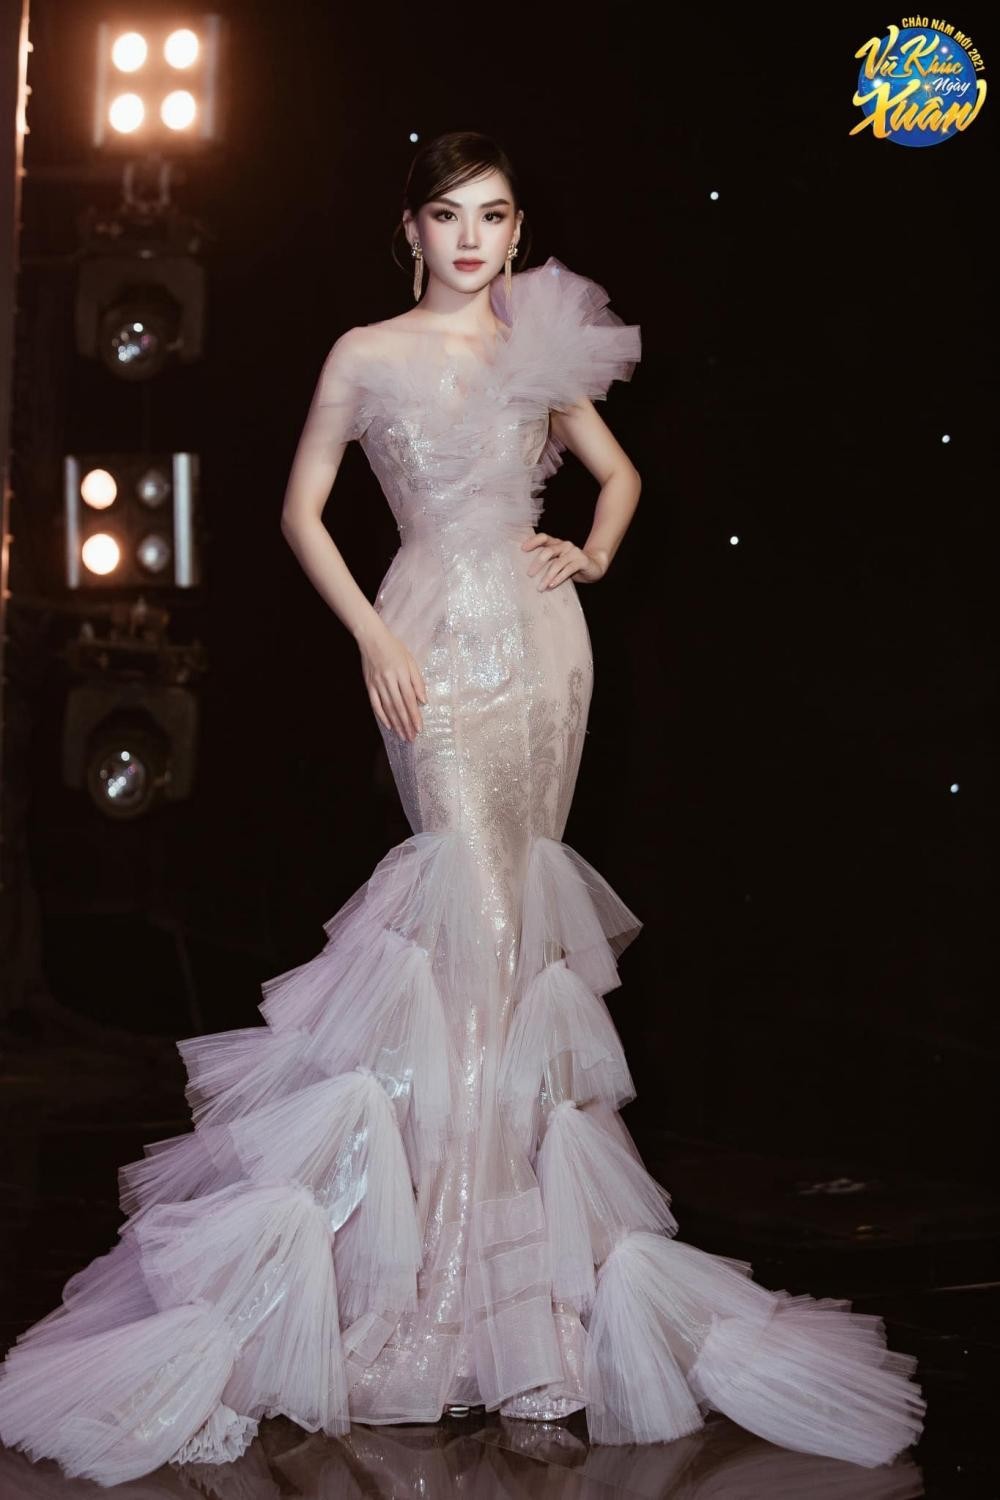 Hoa hậu Mai Phương cực khéo chọn đầm dạ hội, thiết kế nào cũng tôn dáng tuyệt đối ảnh 9